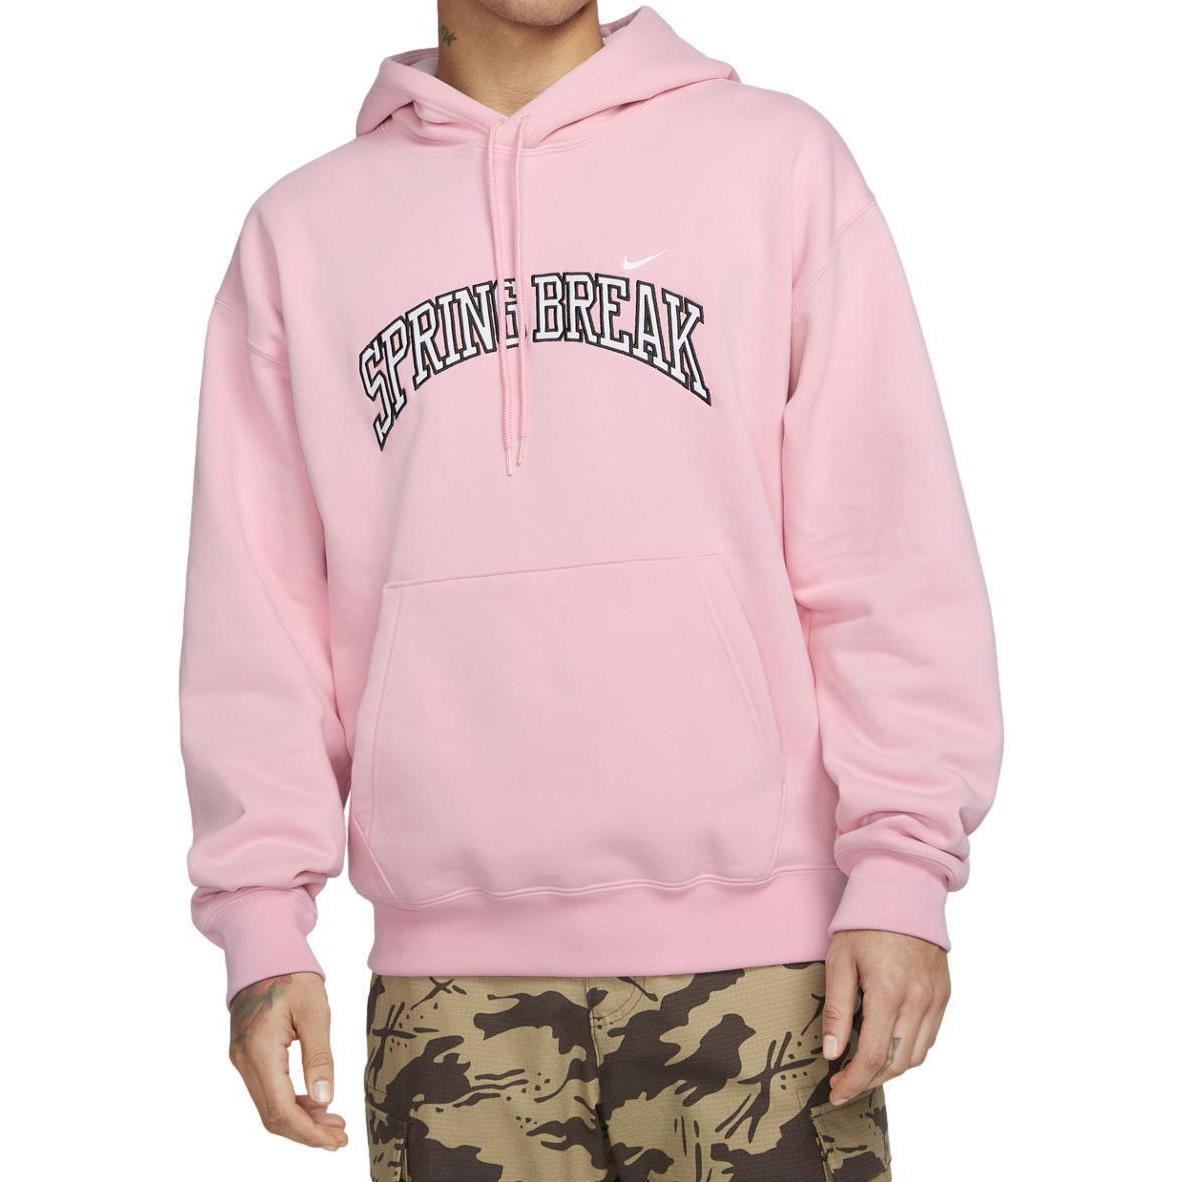 Nike SB Adult Unisex Spring Break Pullover Hoodie Medium Soft Pink DV9050-690